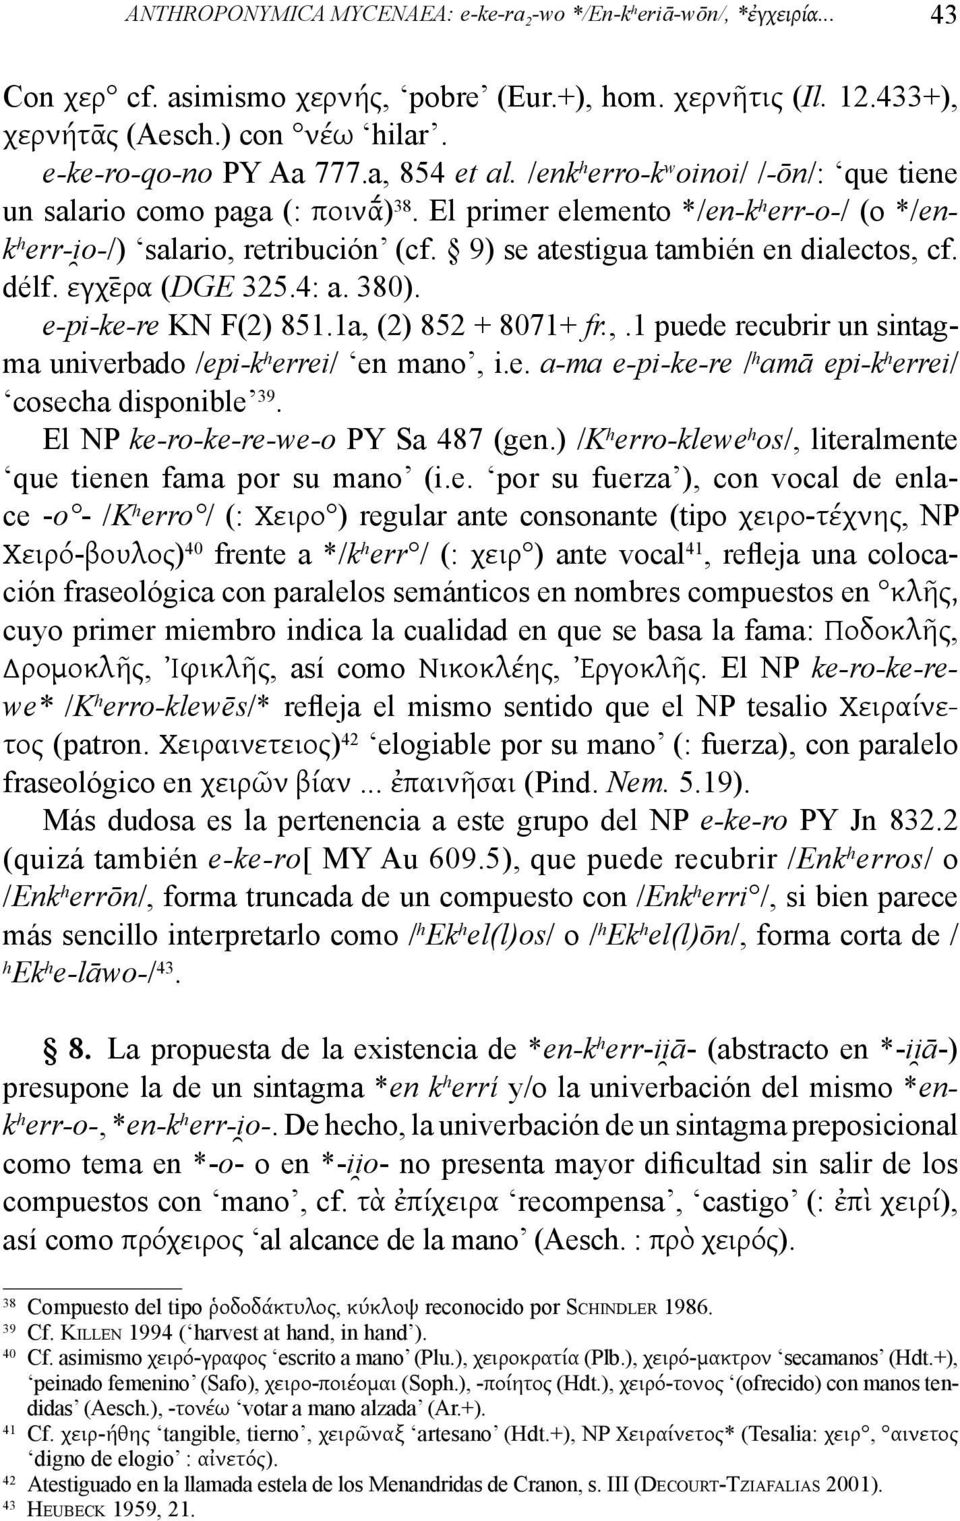 9) se atestigua también en dialectos, cf. délf. εγχε ρα (DGE 325.4: a. 380). e-pi-ke-re KN F(2) 851.1a, (2) 852 + 8071+ fr.,.1 puede recubrir un sintagma univerbado /epi-k h errei/ en mano, i.e. a-ma e-pi-ke-re / h amā epi-k h errei/ cosecha disponible 39.